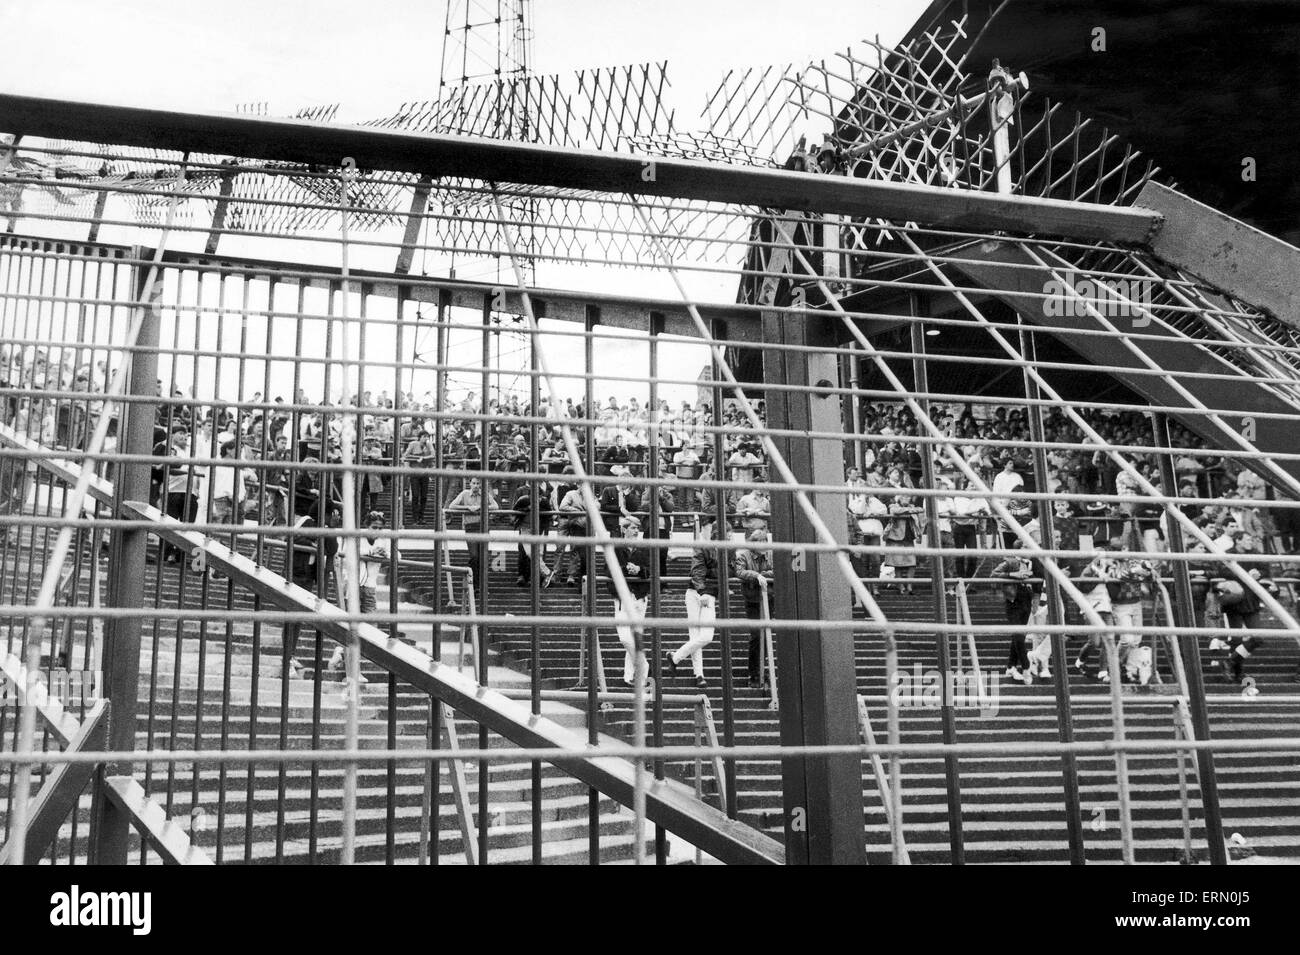 English League Division una partita presso il St Andrews. Birmingham City 1 V West Ham United 0. West Ham appassionati al gioco seduti dietro il recentemente installato anti-sommossa scherma presso il St Andrews, la prima partita di campionato per essere giocato ci a partire dal famigerato Leeds riot corrisponde alla fine della stagione precedente. Il 17 agosto 1985. Foto Stock